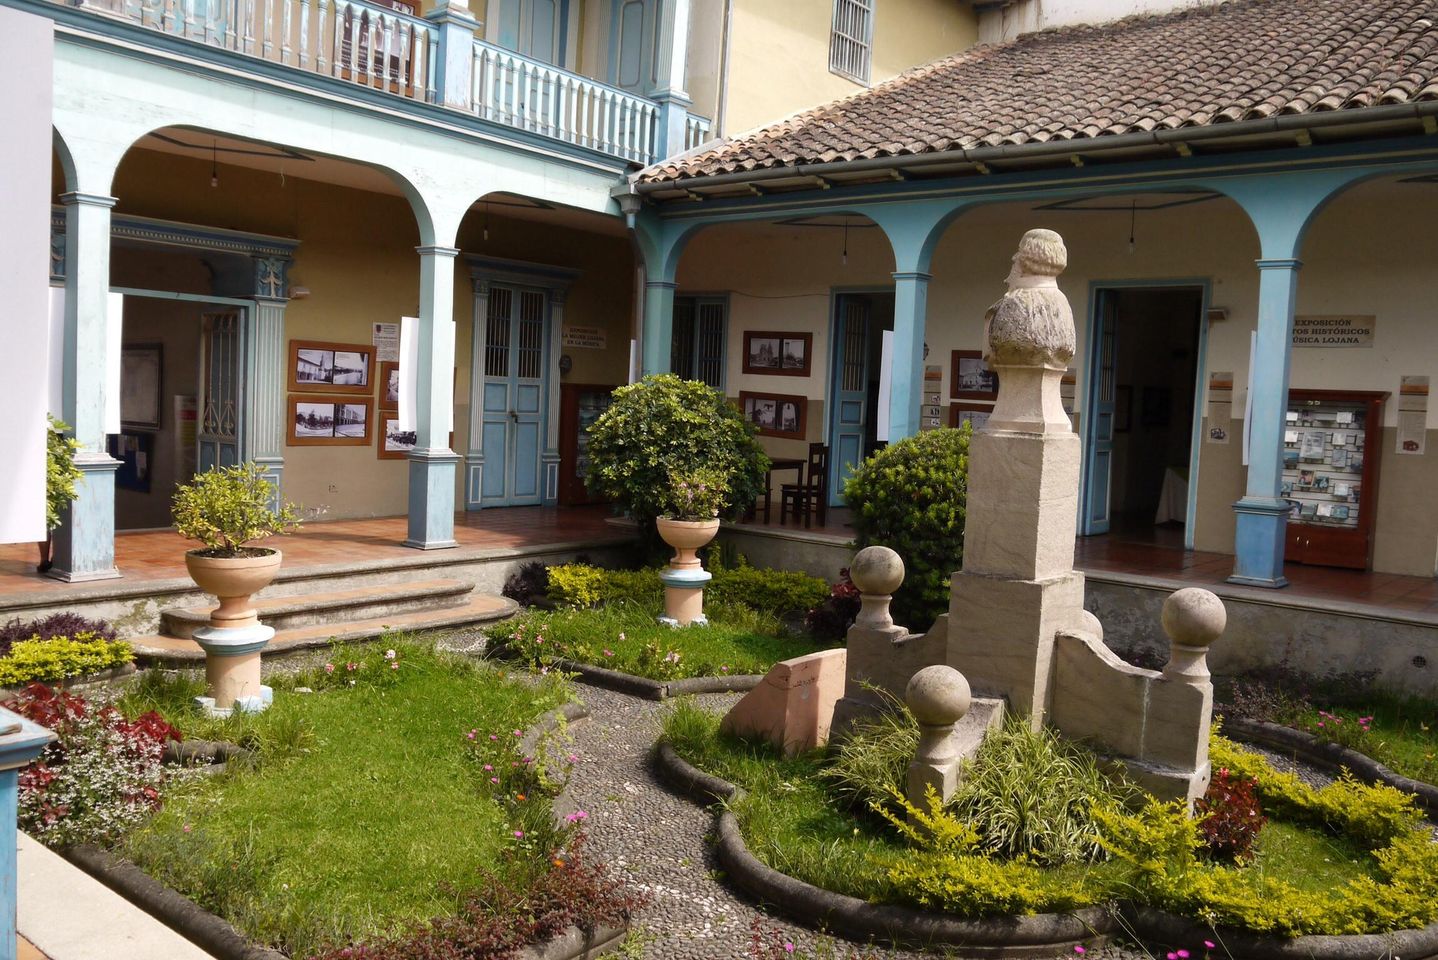 Découvrez la perle cachée de lÉquateur : le Musée de la Musique à Loja.